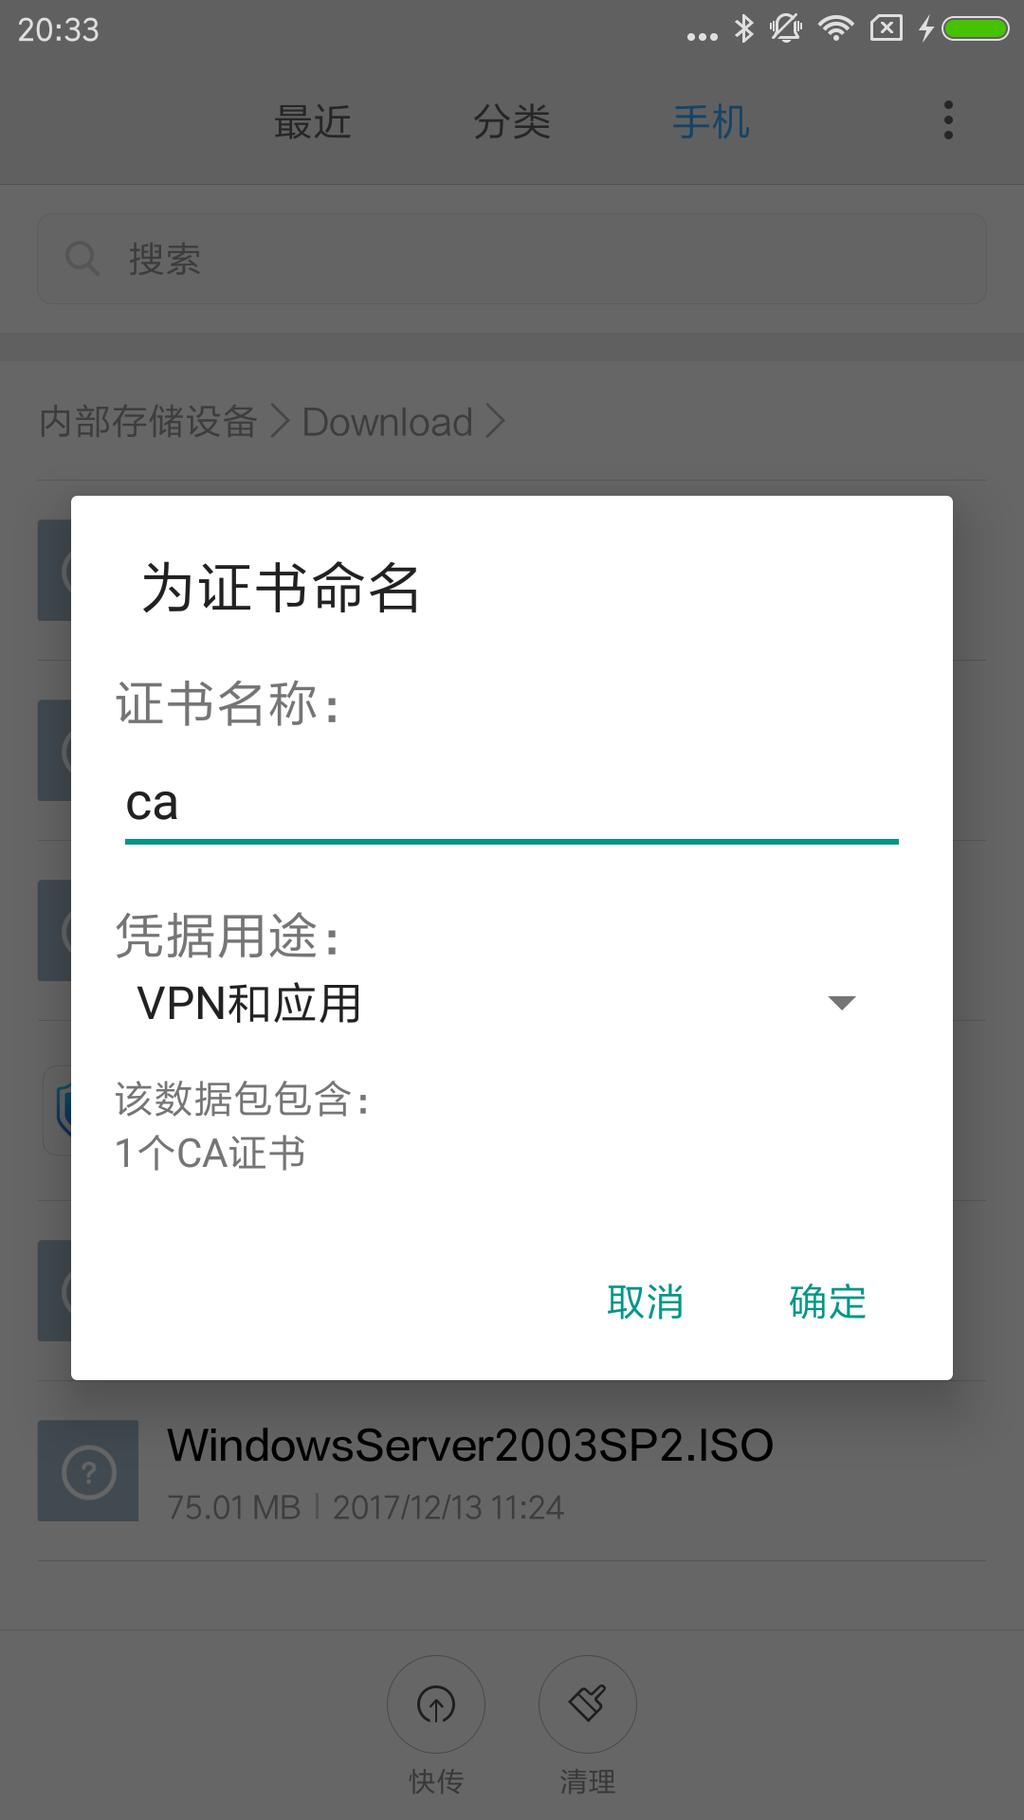 远程访问 IPSec VPN 安装 CA 证书 :